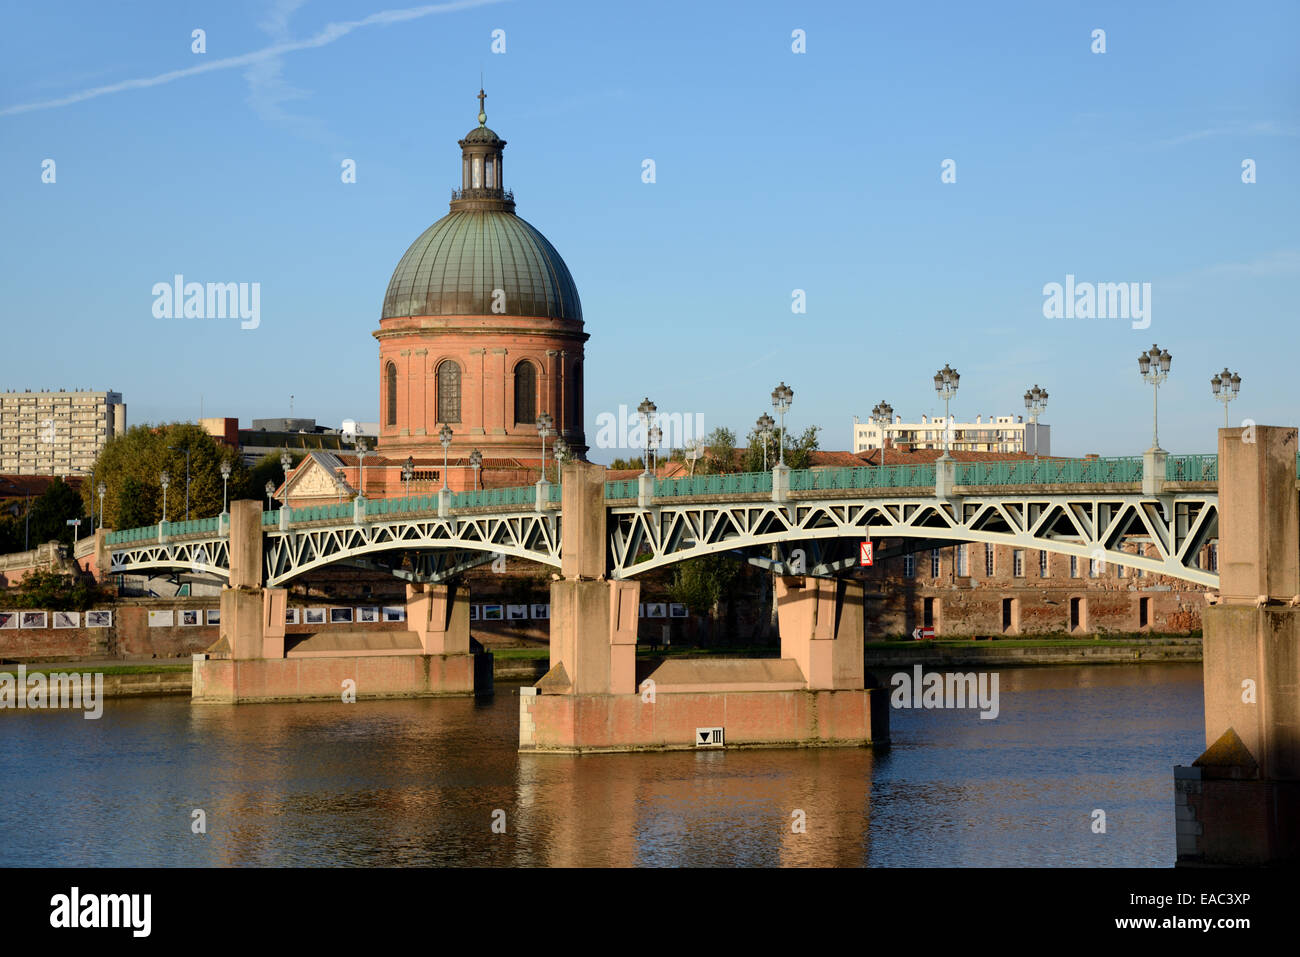 The Landmark Dome of Saint Joseph's Chapel & the Saint Pierre Bridge, or Pont Saint-Pierre, over the River Garonne Toulouse France Stock Photo